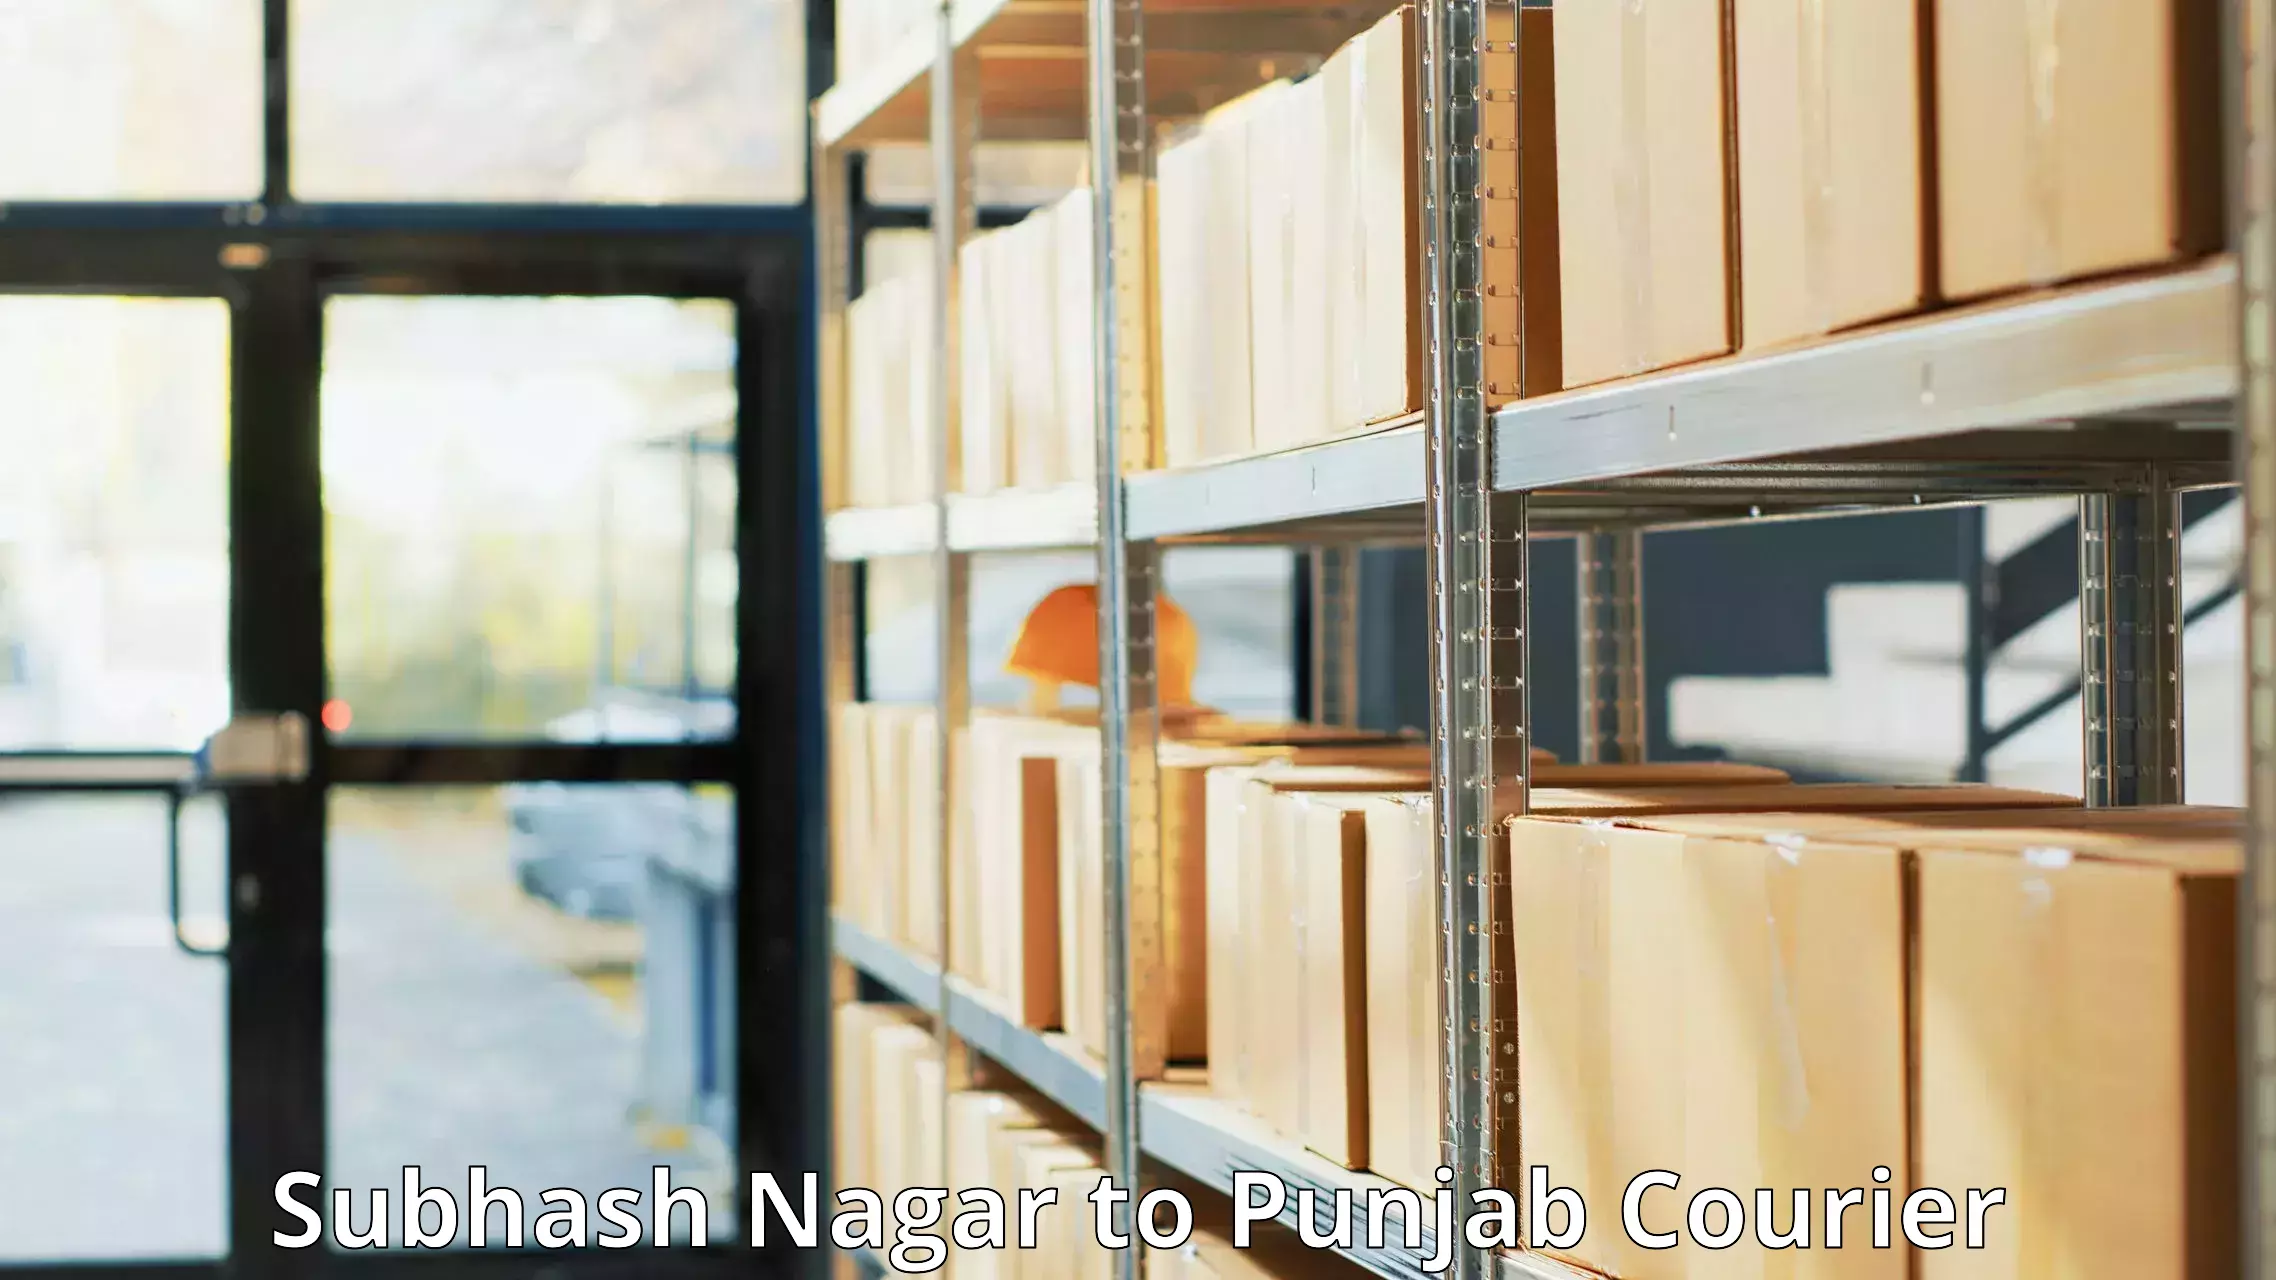 Online courier booking Subhash Nagar to Punjab